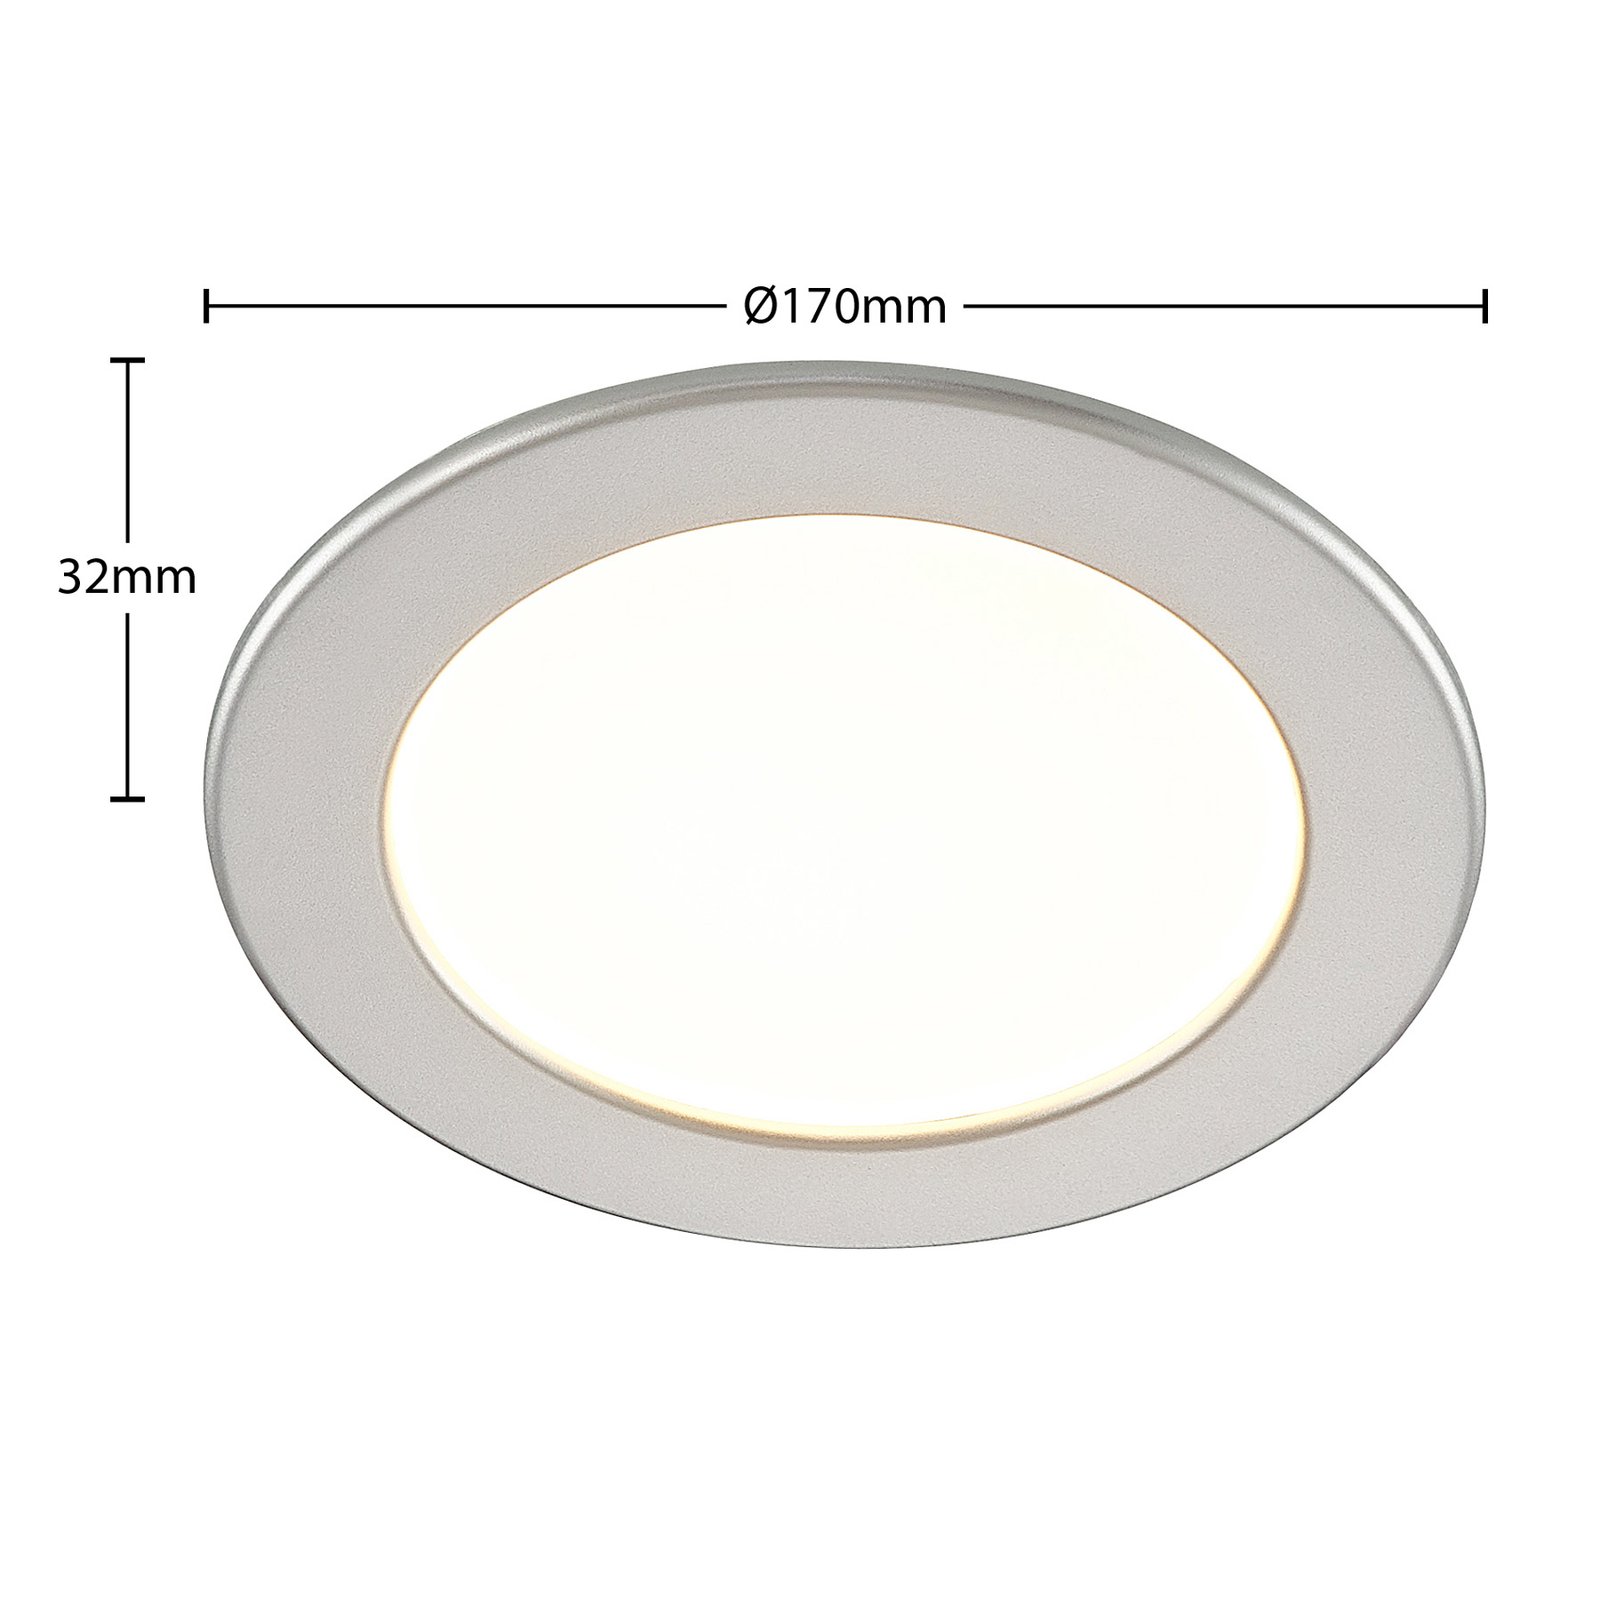 Prios LED-Einbaulampe Cadance, silber, 17 cm, dimmbar